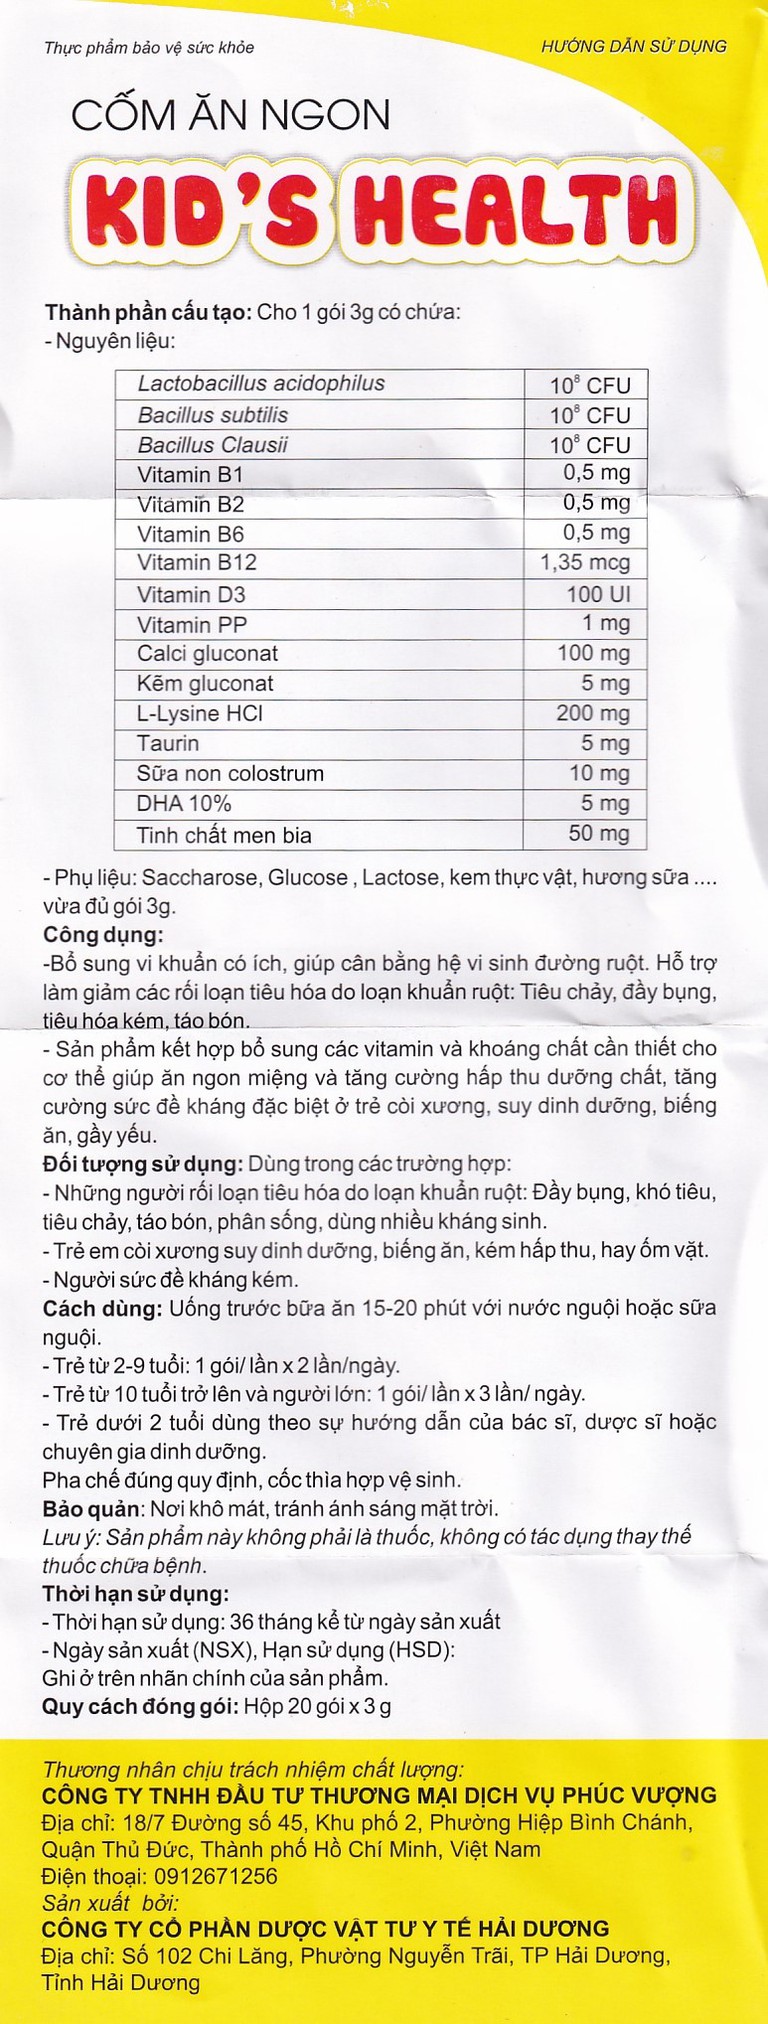 Cốm ăn ngon Kid's Health HDPharma bổ sung vi khuẩn có ích, cân bằng hệ vi sinh đường ruột (20 gói x 3g)